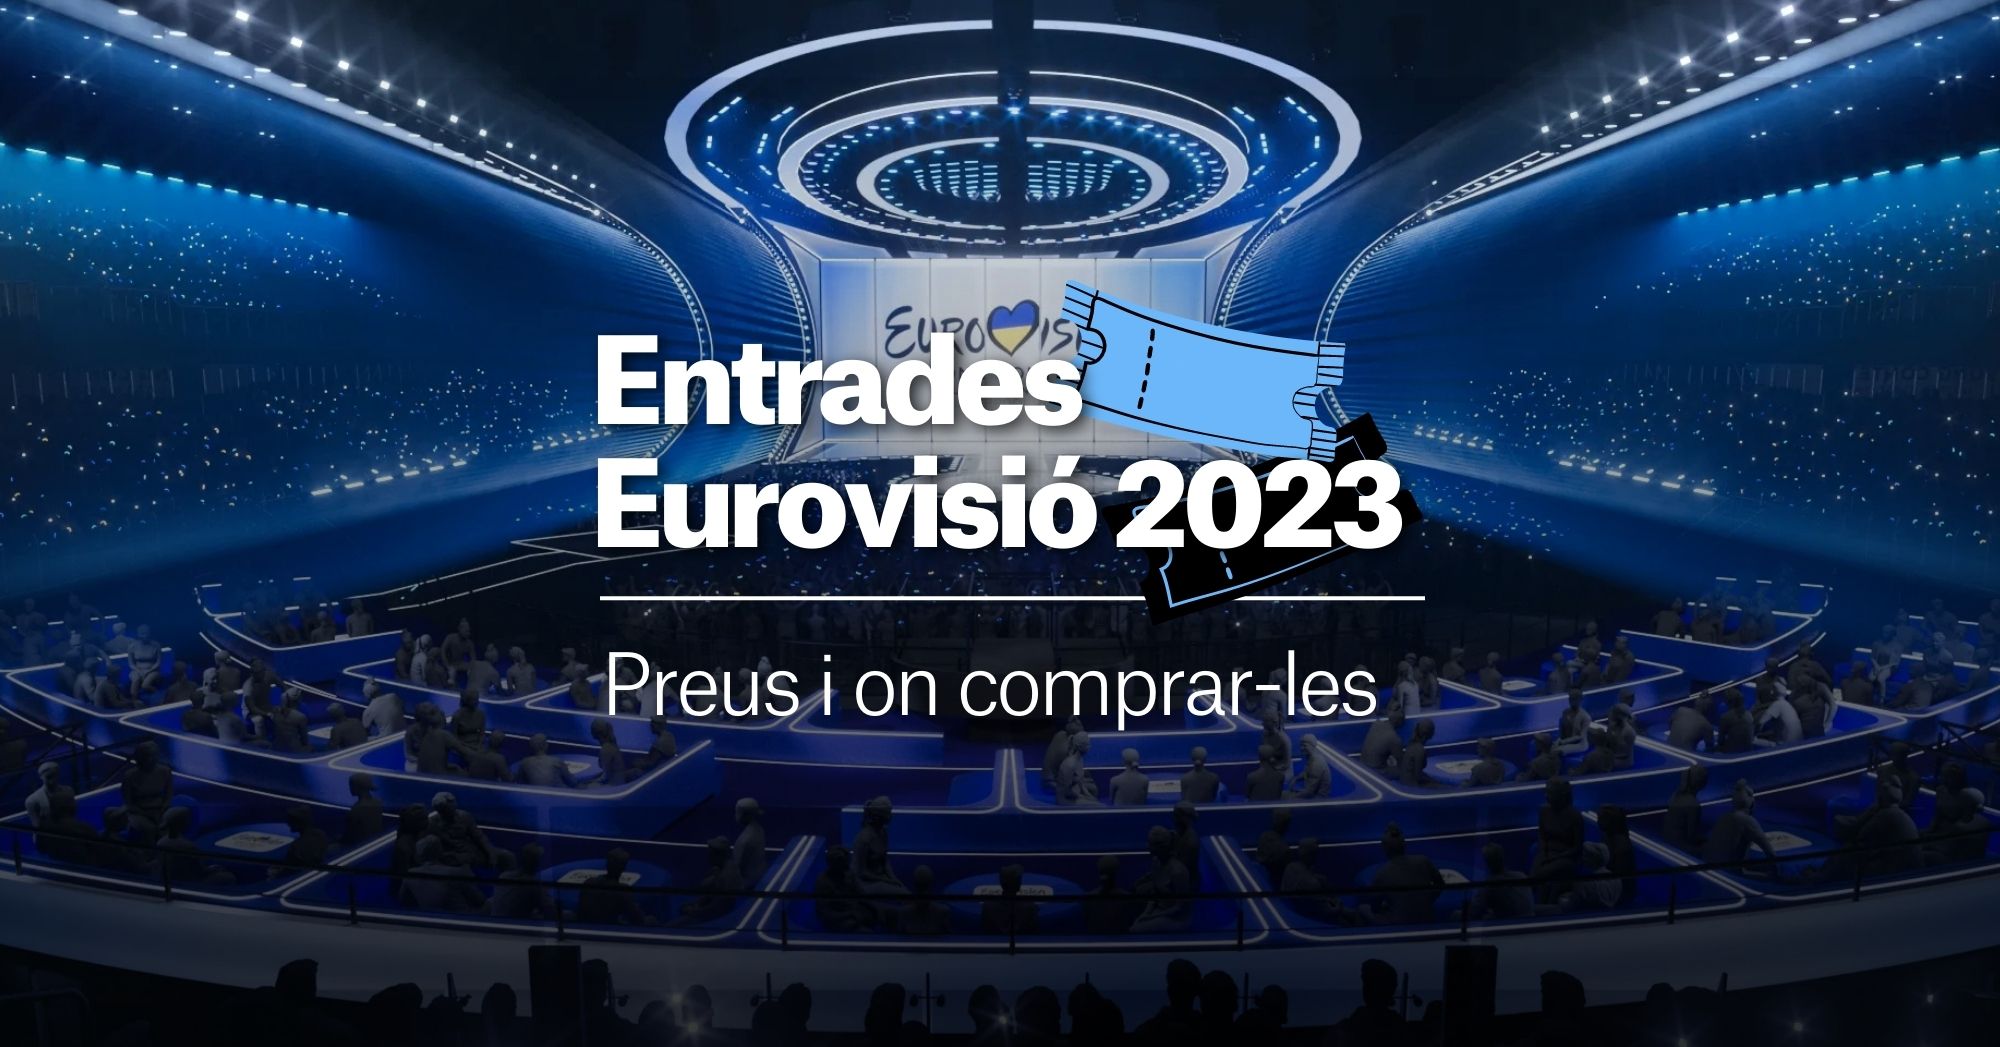 Entradas para Eurovisión 2023: precios, dónde comprarlas y todos los detalles